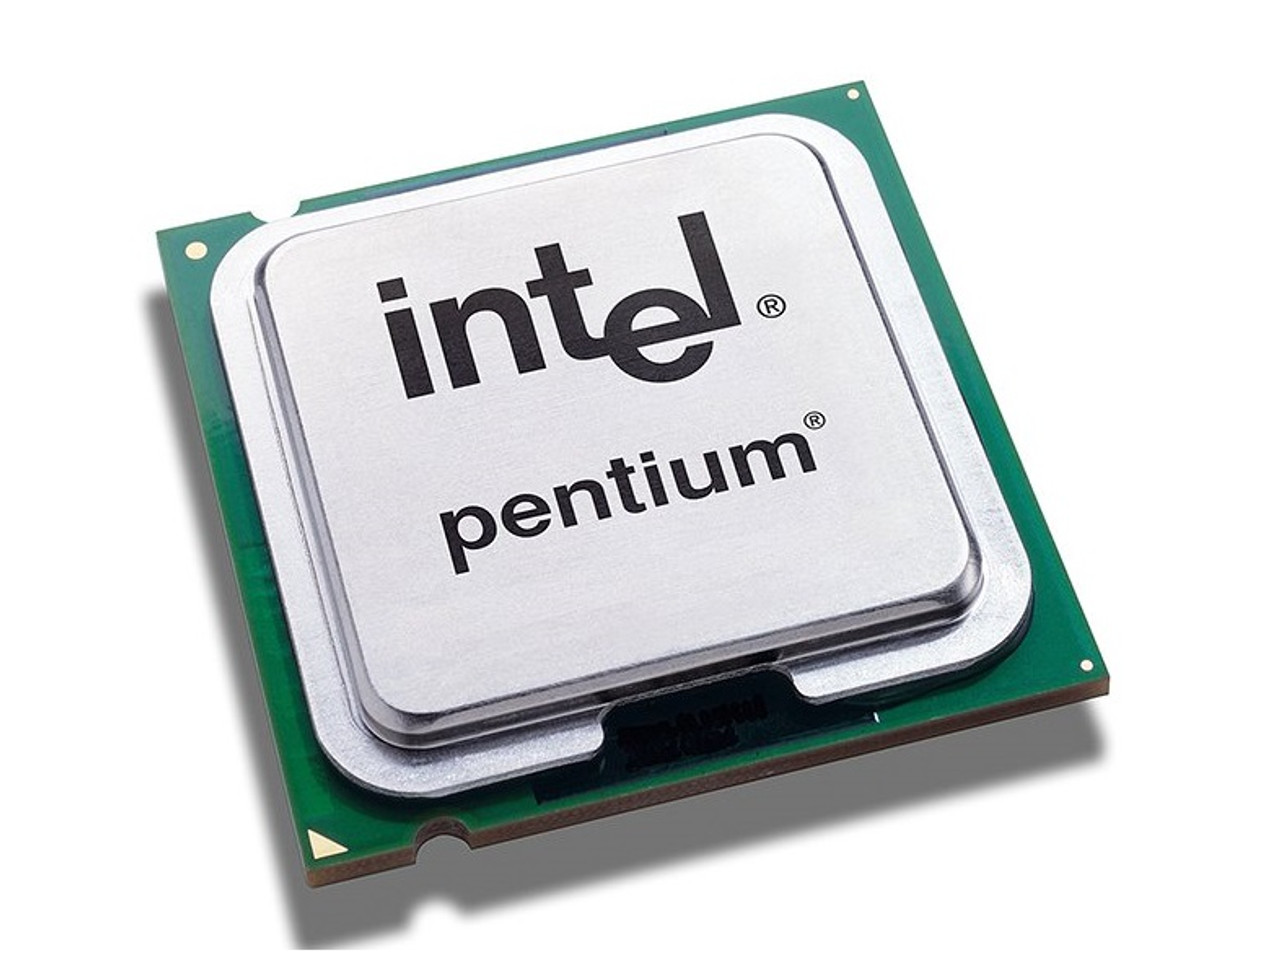 SL27K - Intel Pentium MMX 166MHz 66MHz FSB Socket SPGA Processor